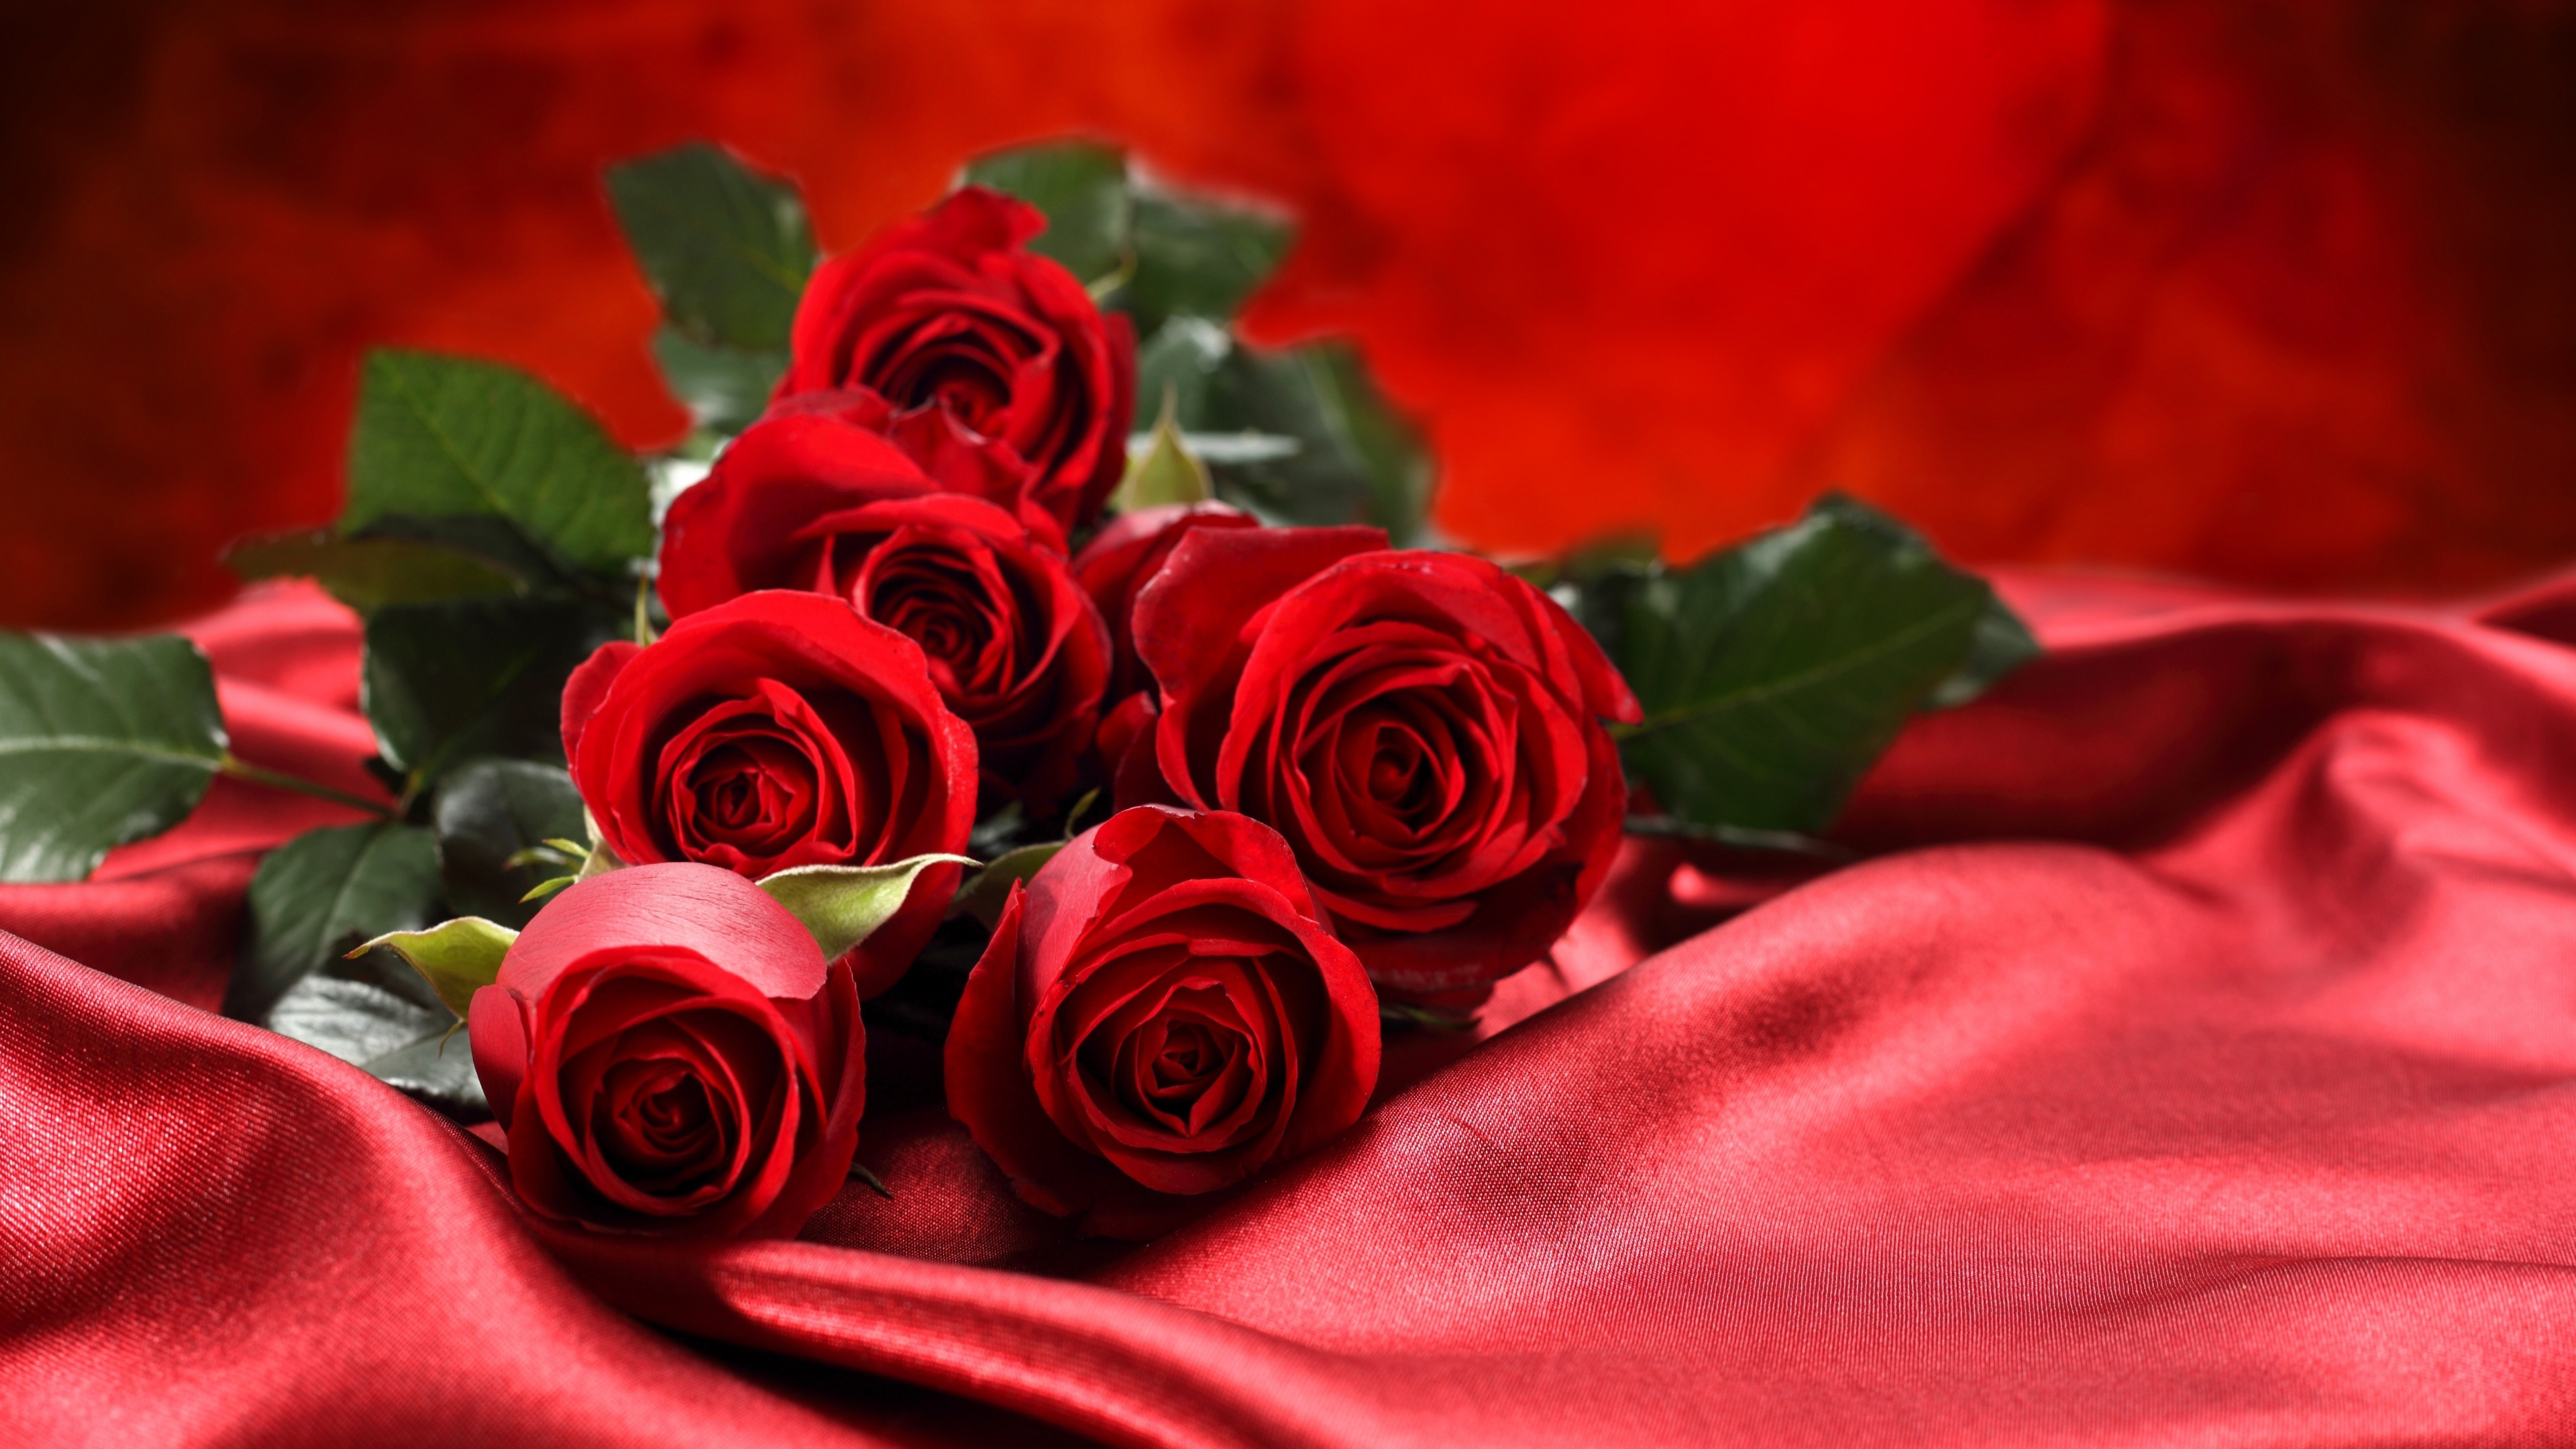 Обои Роза, цветочный букет, сад роз, красный цвет, семья Роуз в разрешении 3840x2160